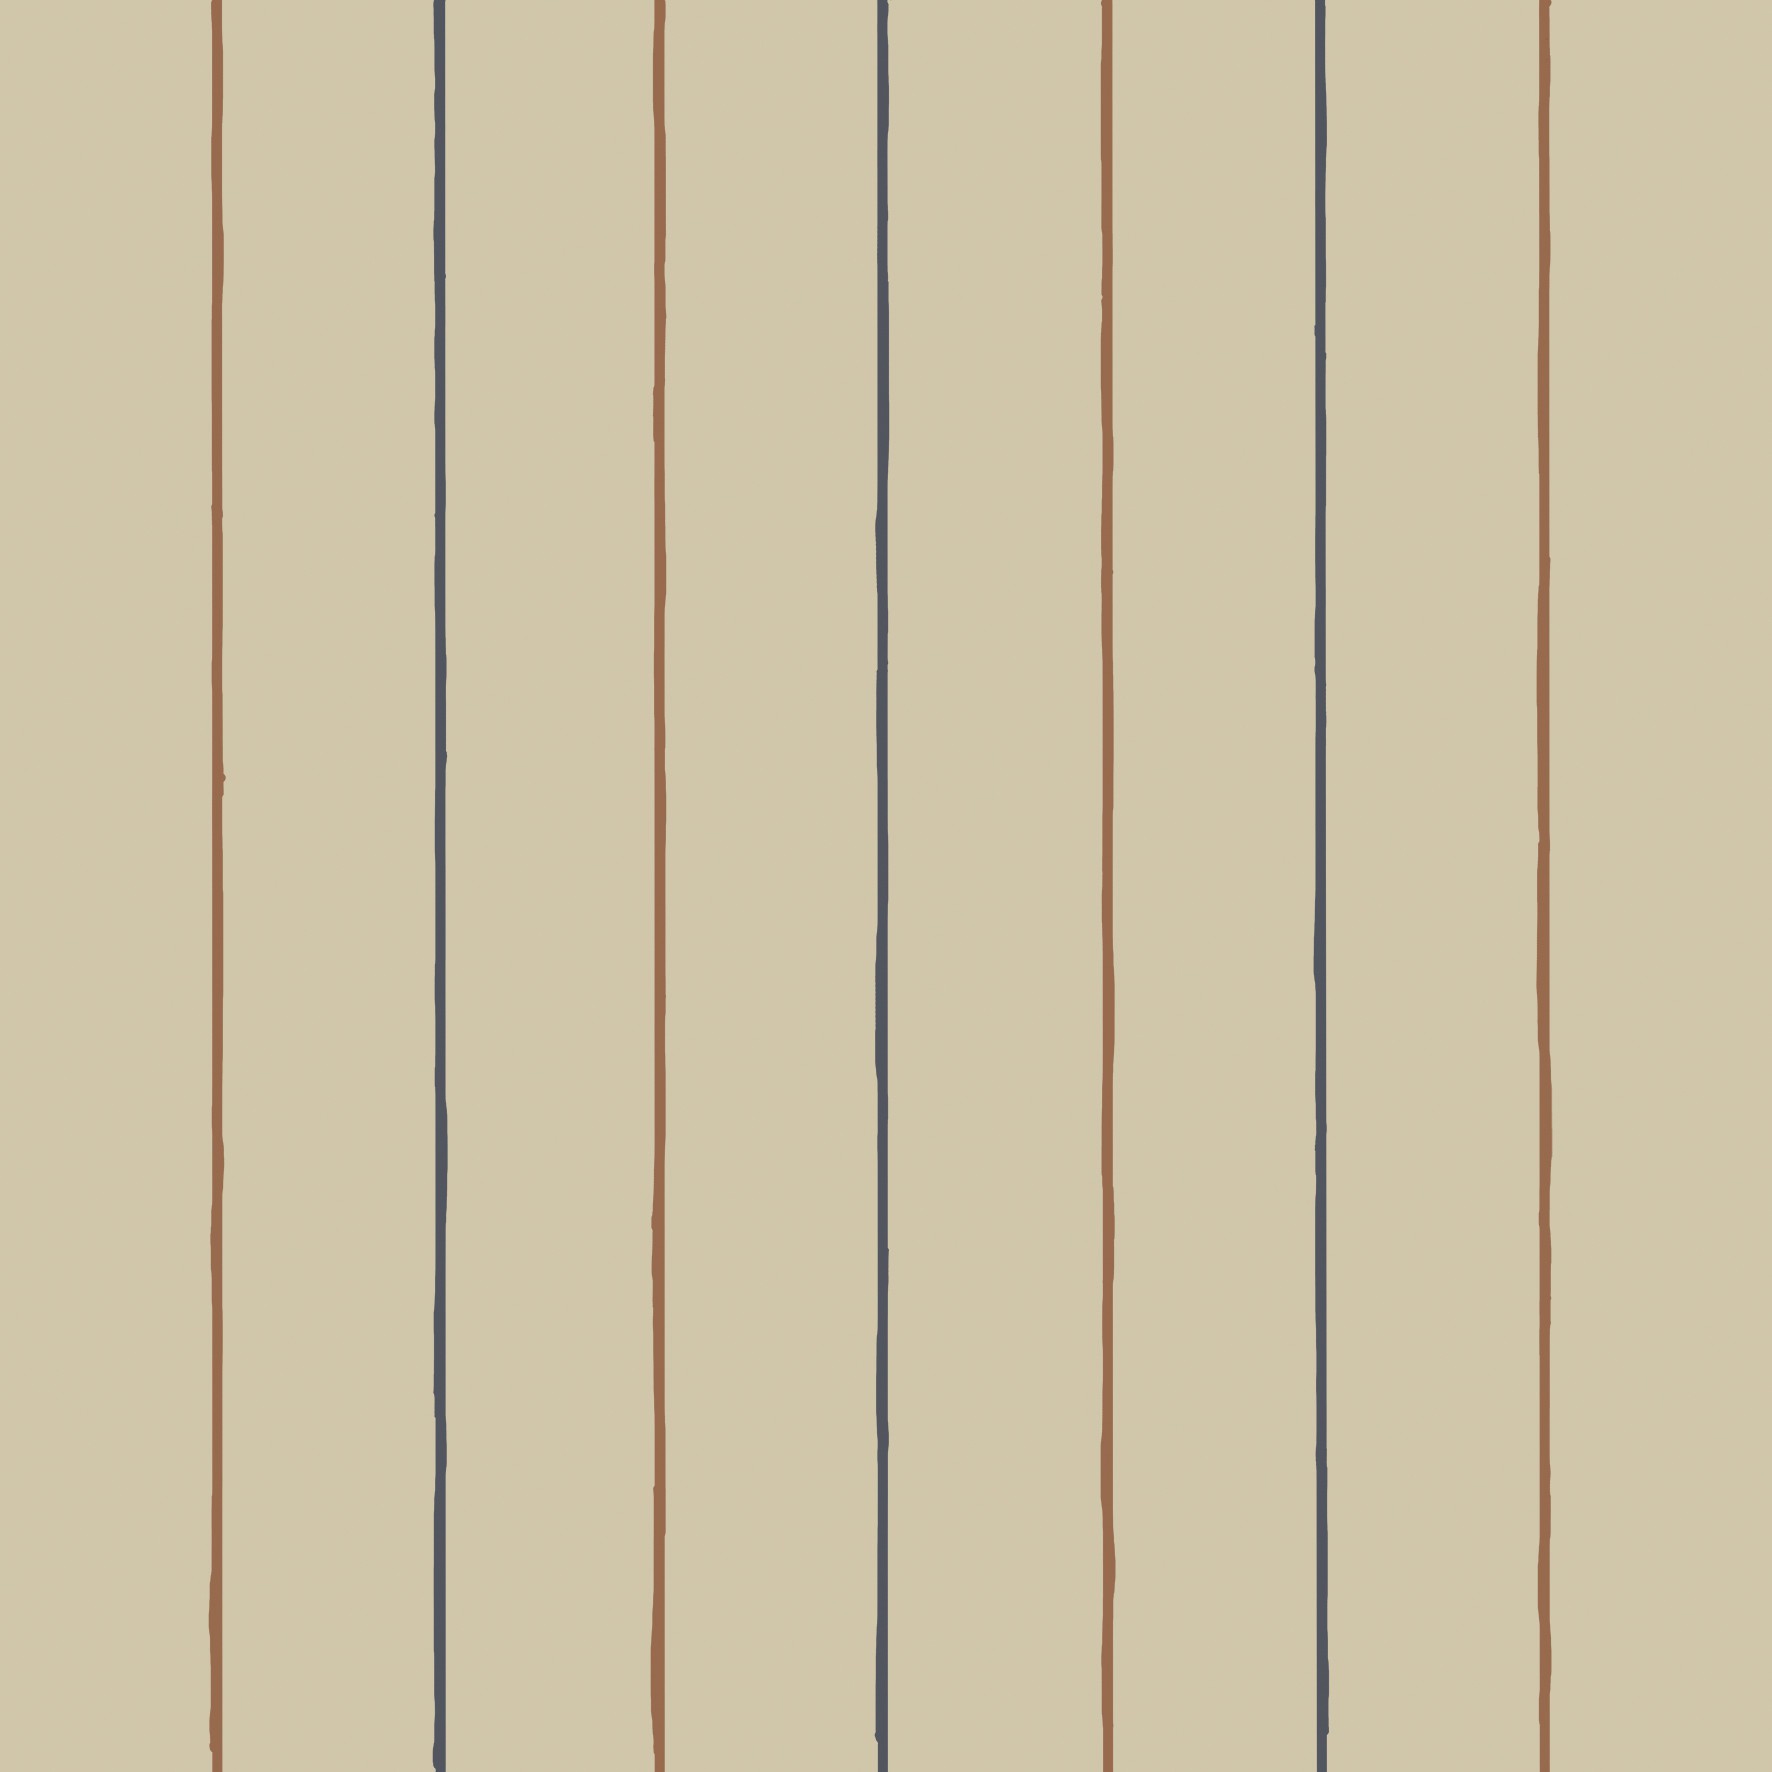 壁纸-优雅条纹 木纤维ID6438